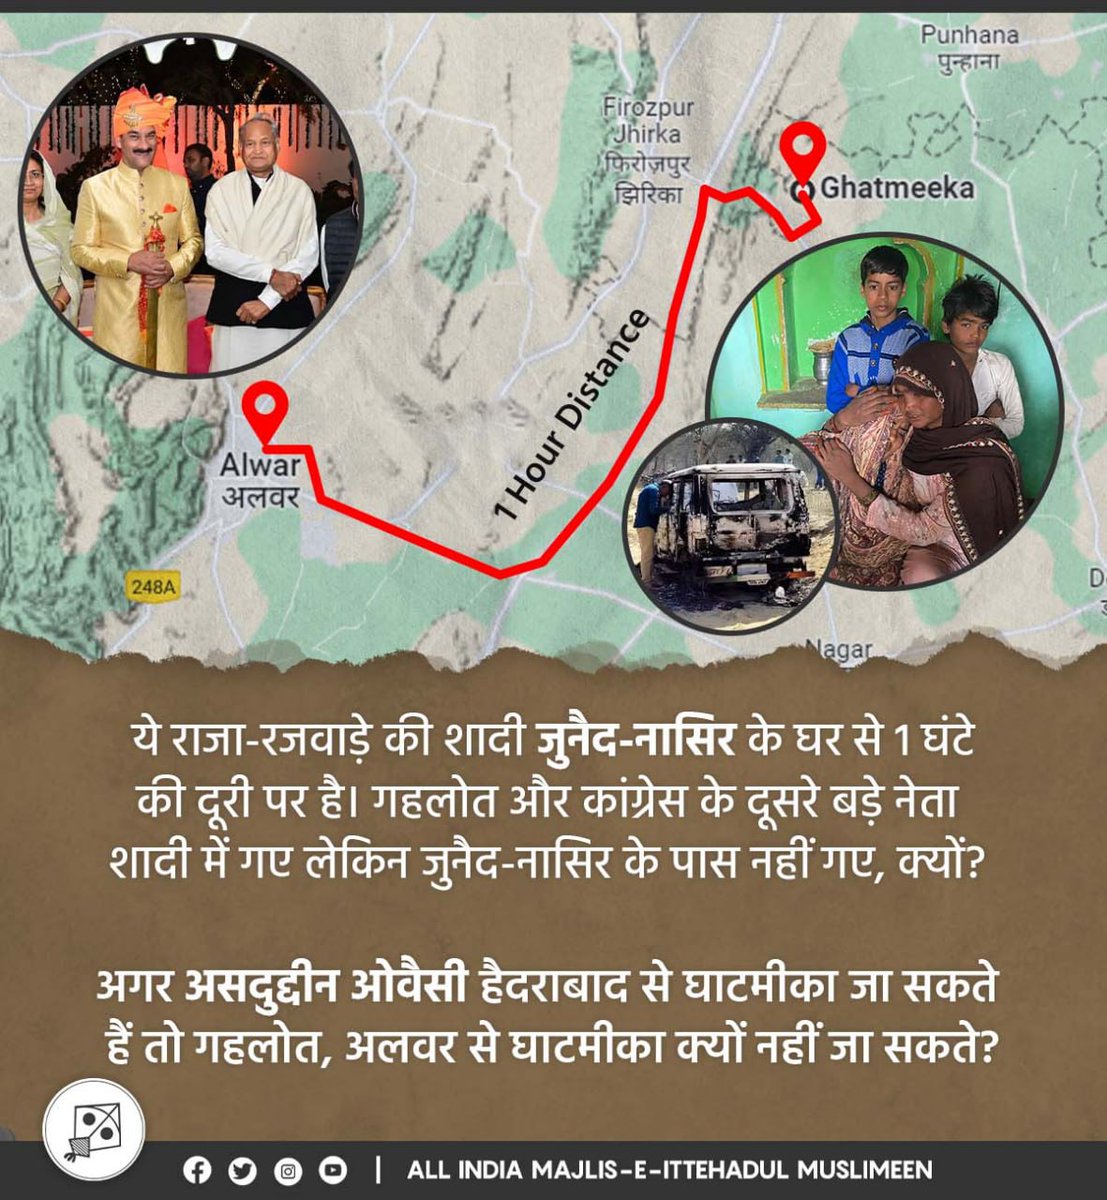 राजस्थान के मुख्यमंत्री @ashokgehlot51 साहब राजा-रजवाड़े की शादी में शिरकत कर सकते हैं, लेकिन जुनैद-नासिर के घर नहीं जा सकते?उनका घर शादी से एक घंटे की दूरी पर है। अगर @asadowaisi हैदराबाद से घाटमीका जा सकते हैं तो गहलोत, अलवर से घाटमीका क्यों नहीं जा सकते?